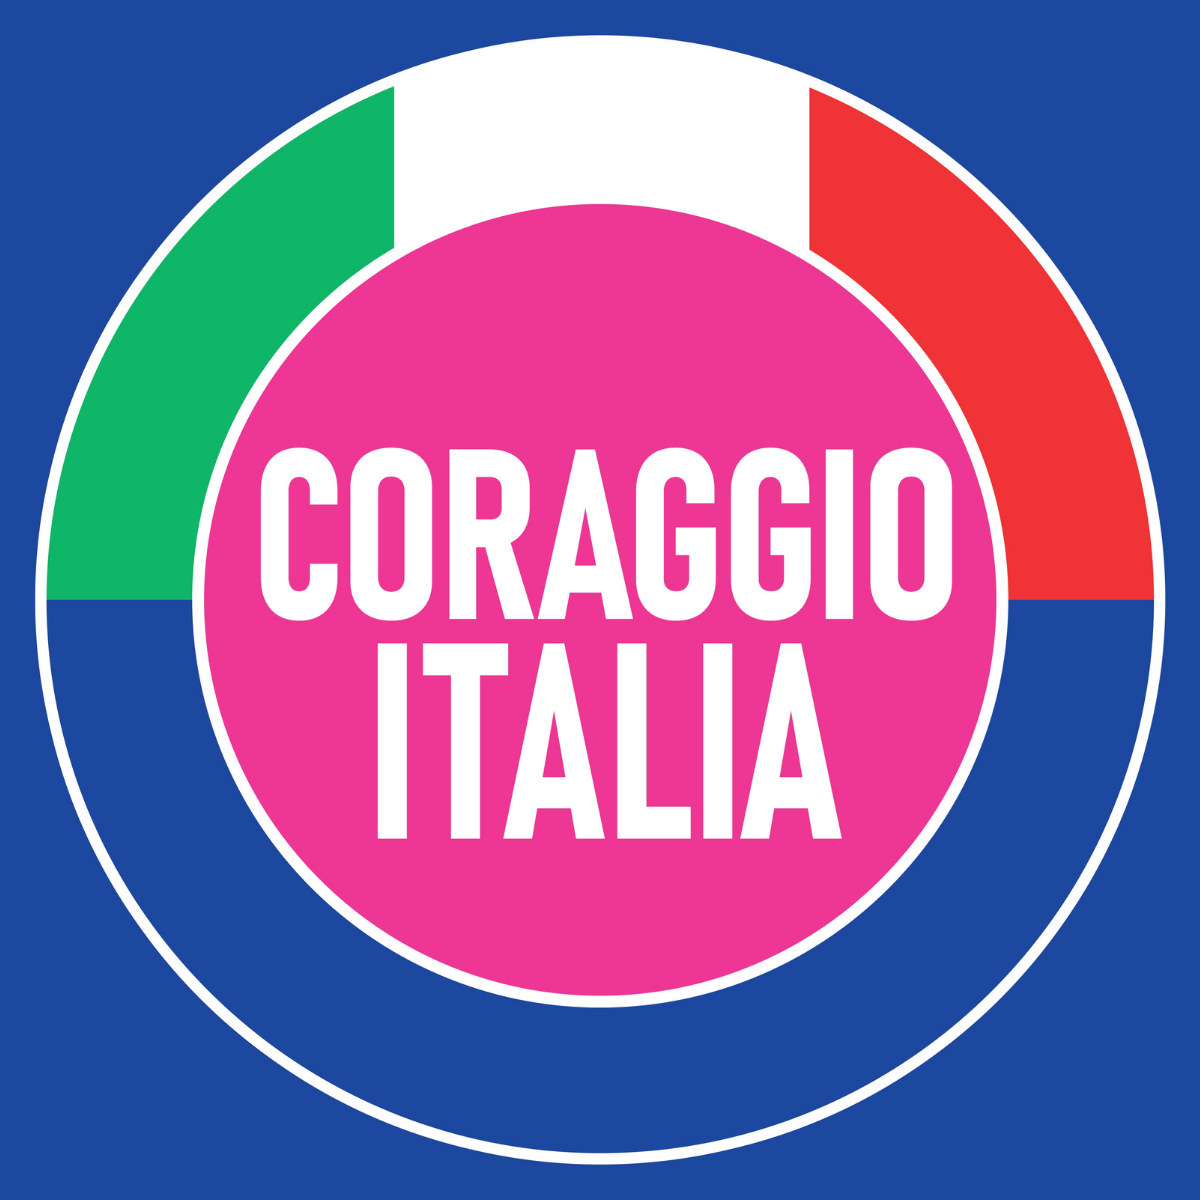 Regionali Calabria, Coraggio Italia pensa a lista con simbolo